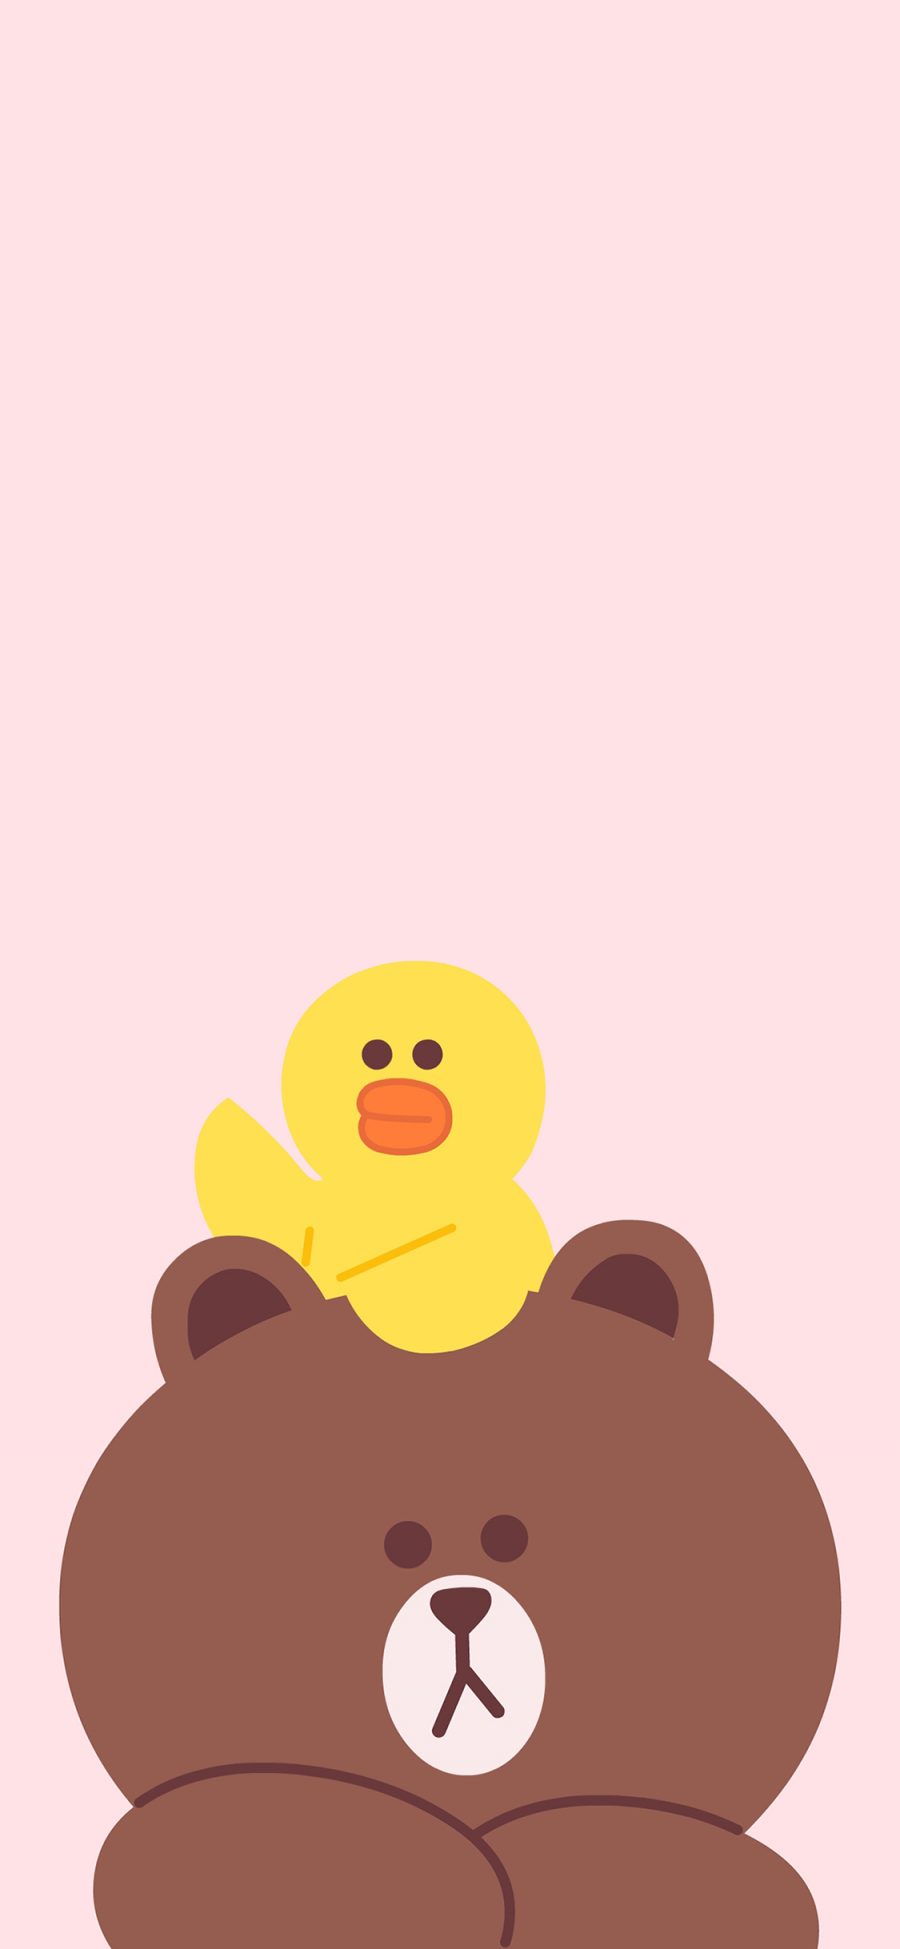 [2436×1125]line 卡通 布朗熊 萨莉鸡 可爱 粉色 苹果手机动漫壁纸图片